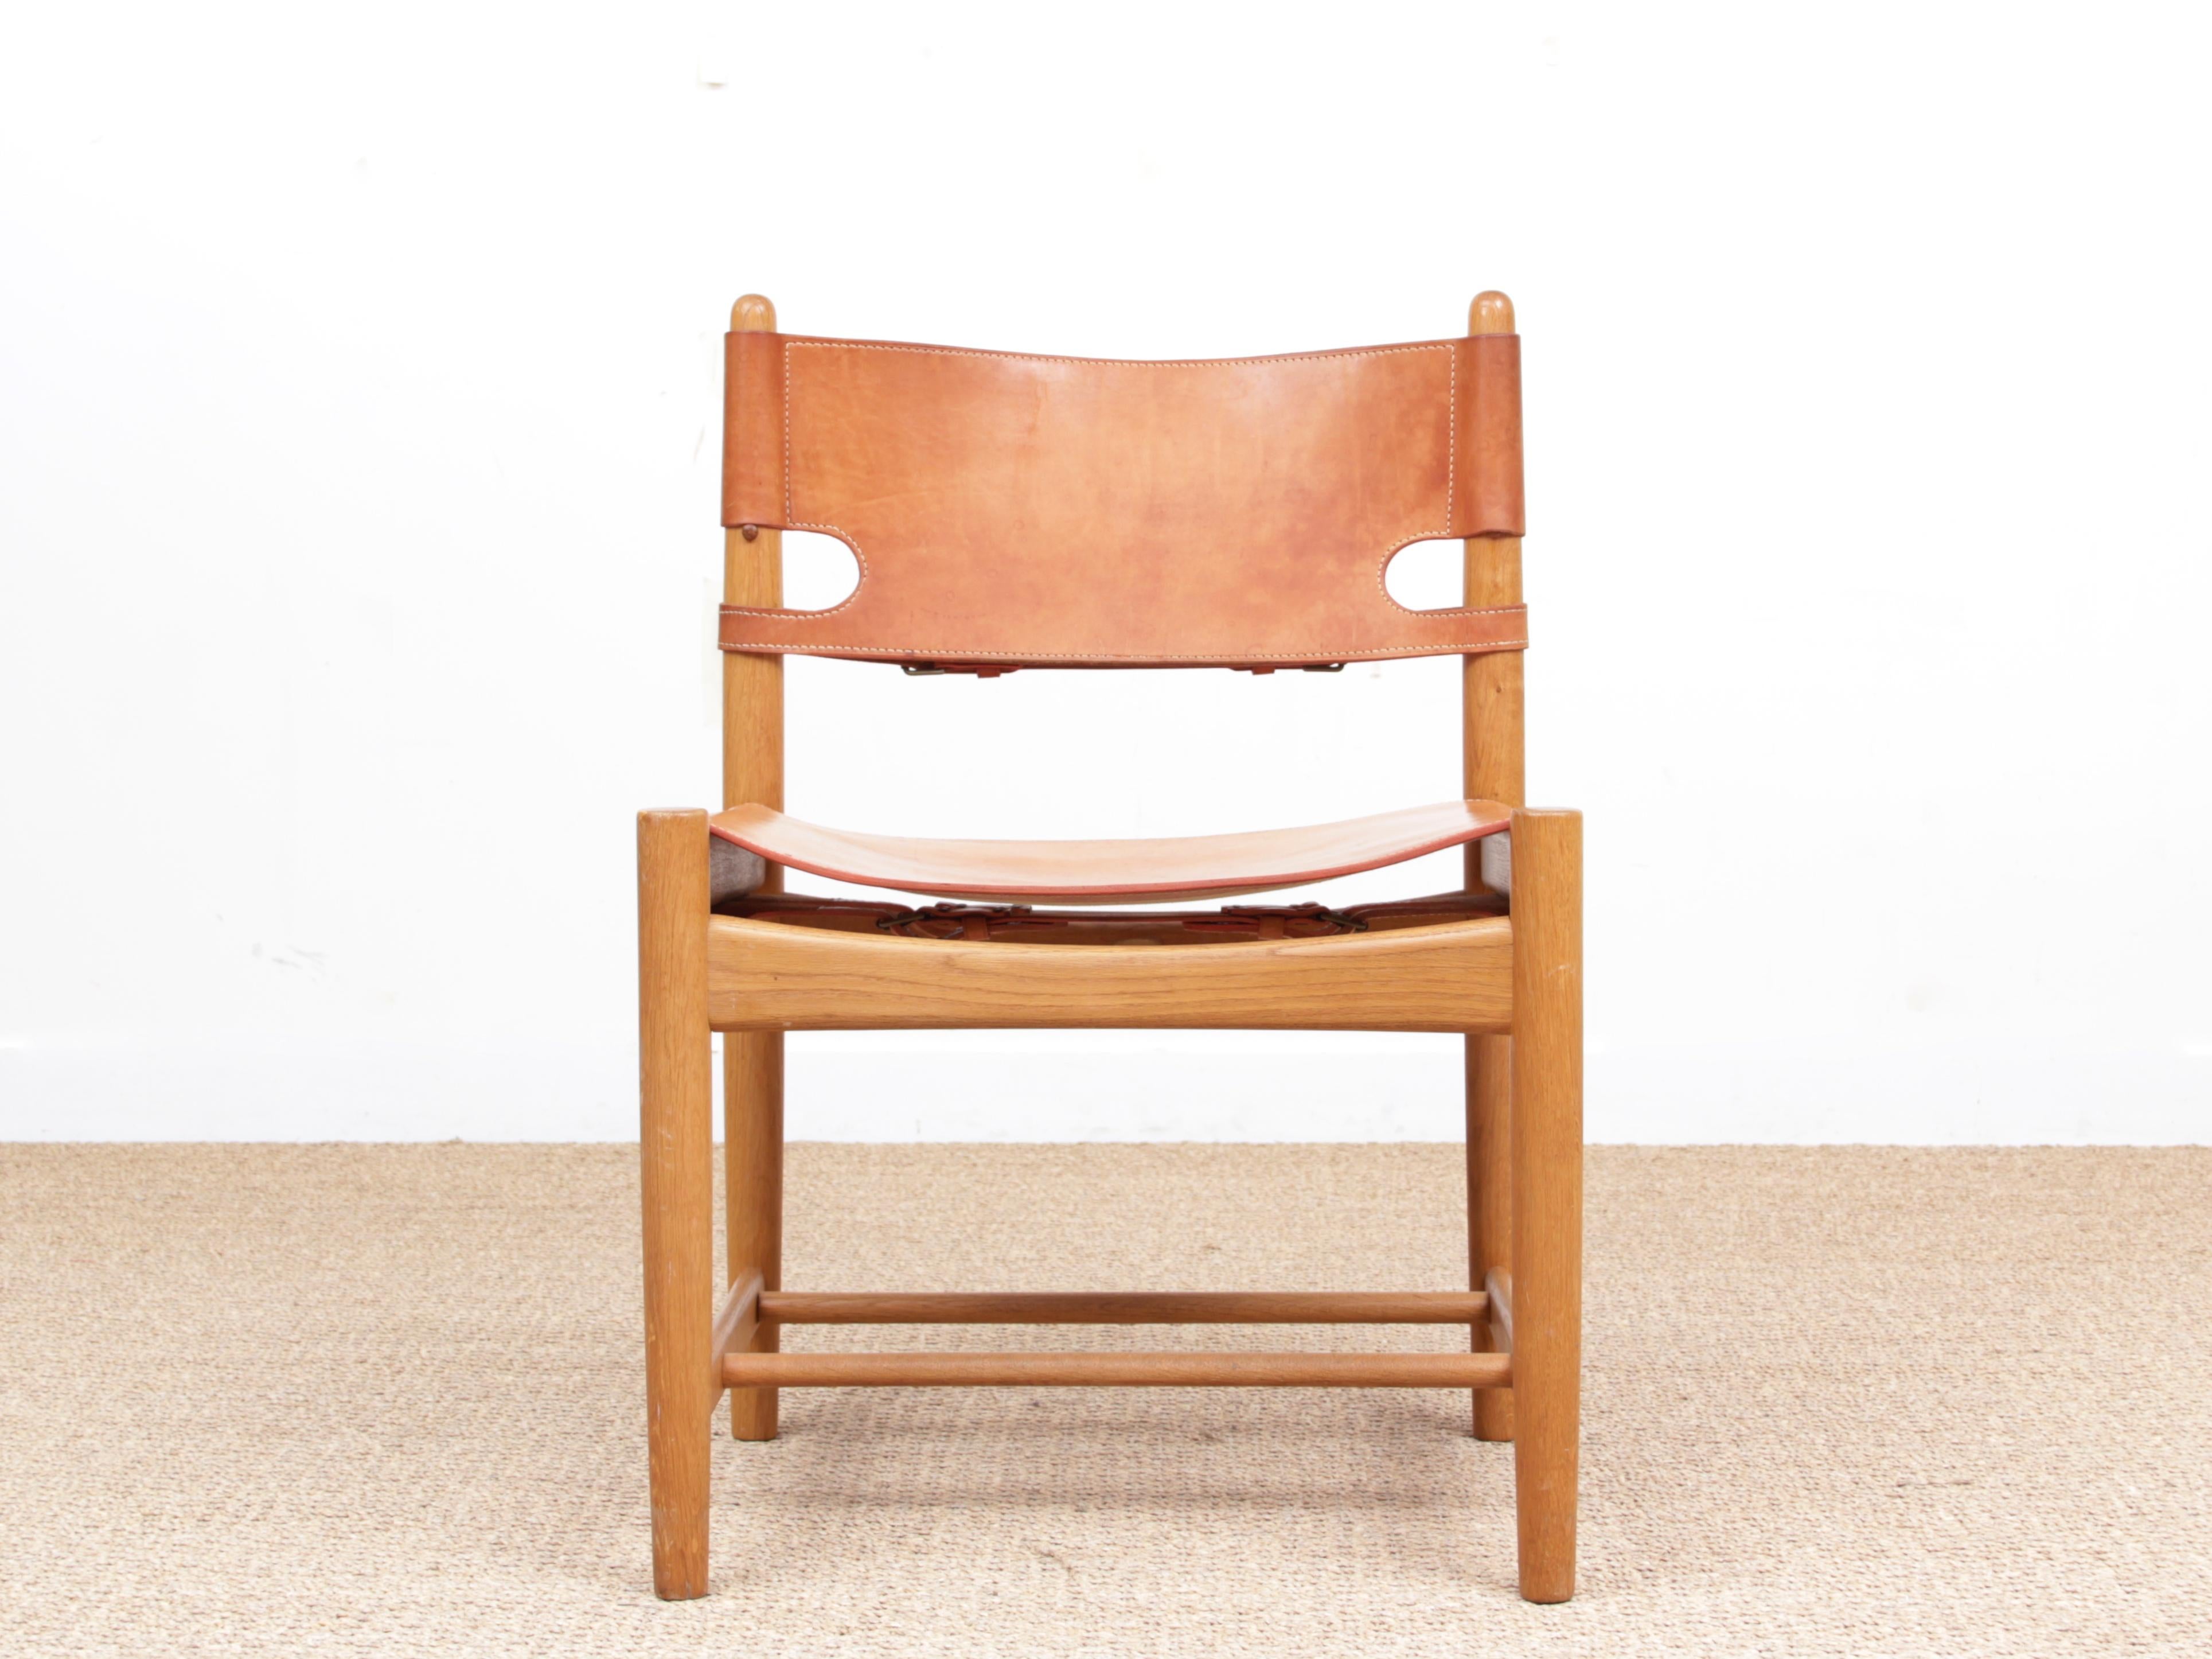 4 Stühle von Borge Mogensen, Modell 3237 für Fredericia Furniture, aus der Mitte des Jahrhunderts. Massive, lackierte Eiche und Leder. Das Stück wurde 1970 gekauft. Ursprünglich vom Tischler Erhard Rasmussen hergestellt, wurde es später von